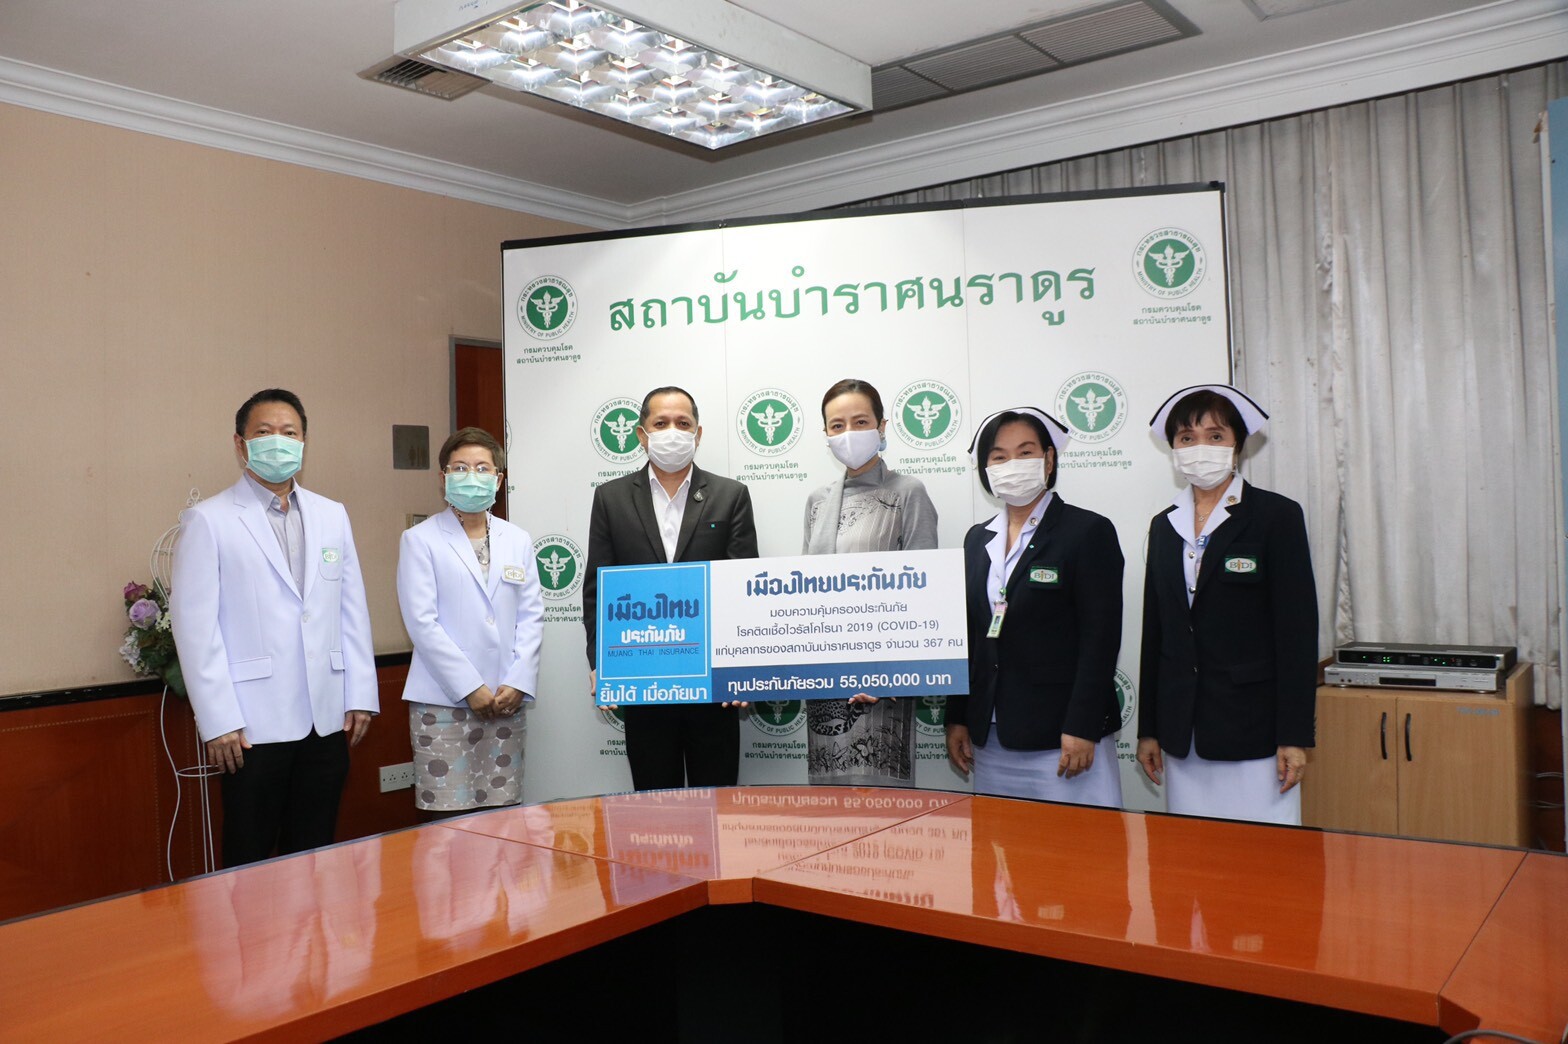 "มาดามแป้ง" เมืองไทยประกันภัยส่งกำลังใจ มอบกรมธรรม์ COVID-19 ต่อเนื่องแก่บุคลากรทางการแพทย์สถาบันบำราศนราดูร